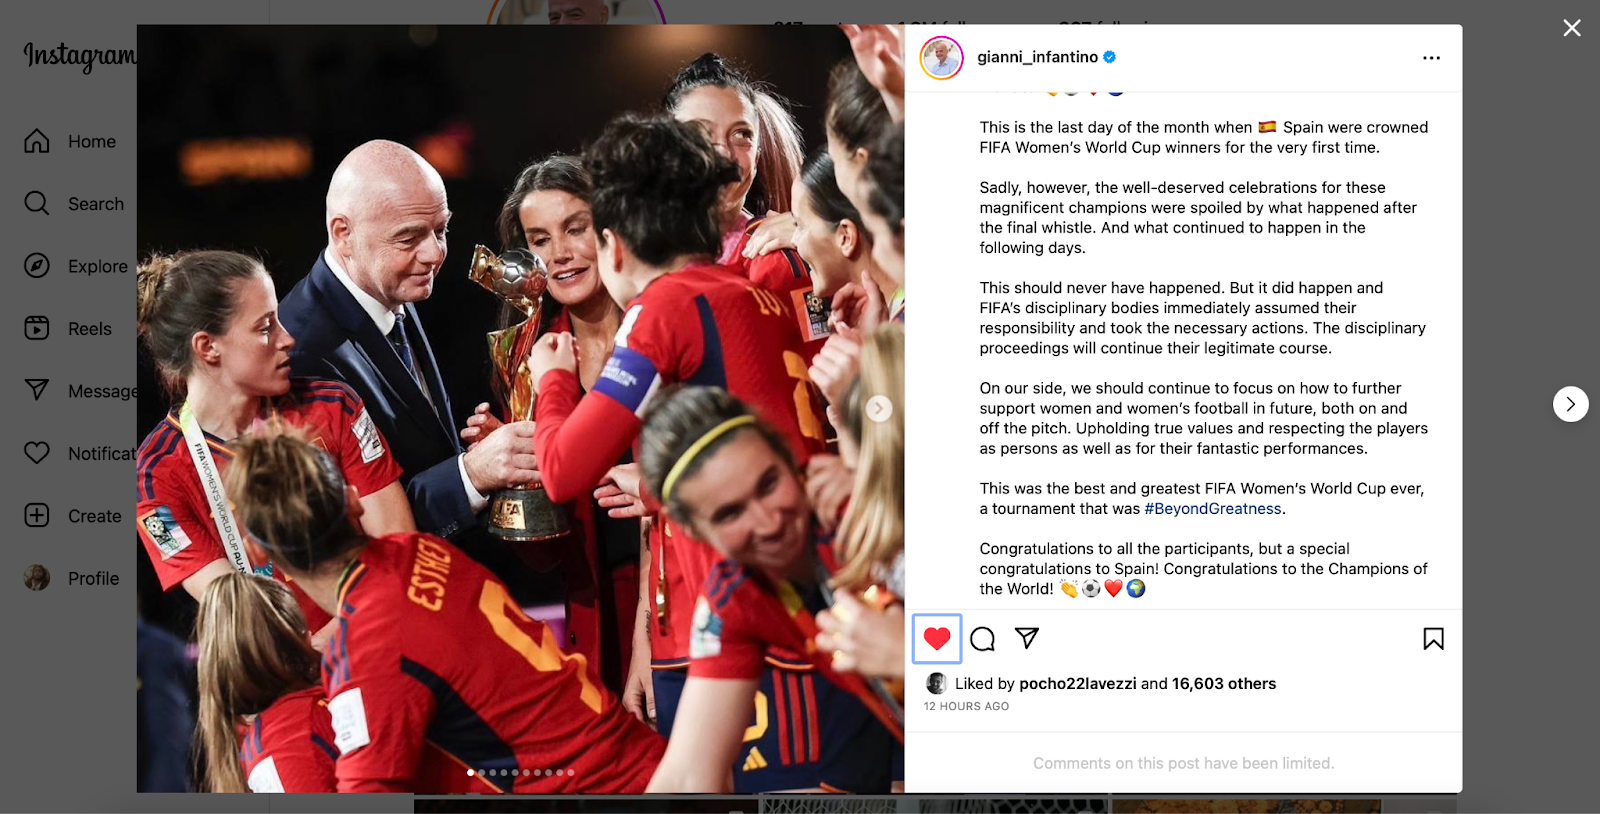 منشور جياني إنفانتينو تعليقا على حادثة تقبيل رئيس الاتحاد الإسباني لكرة القدم للّاعبة هيرموسو